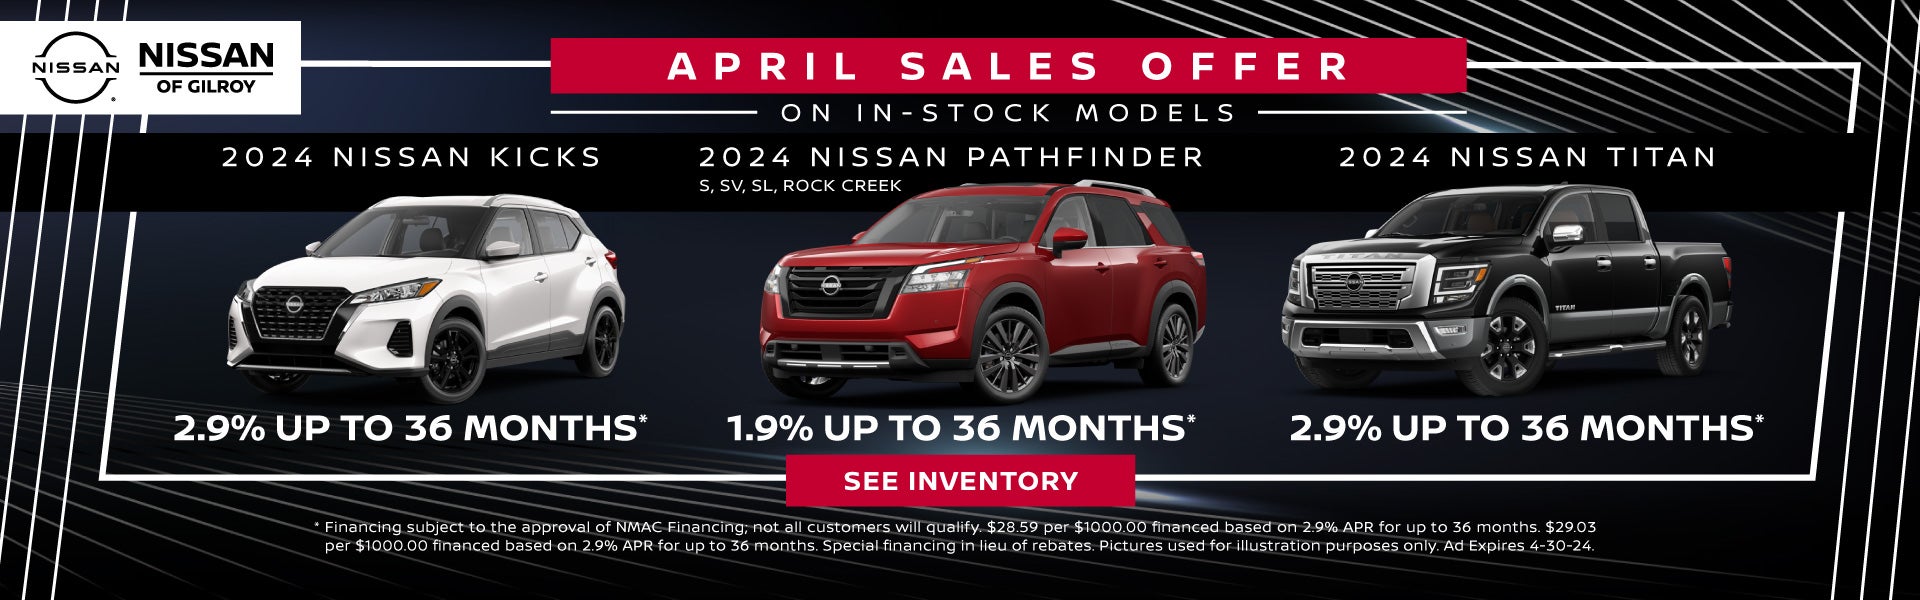 April Sales Offer on Select 2024 Models